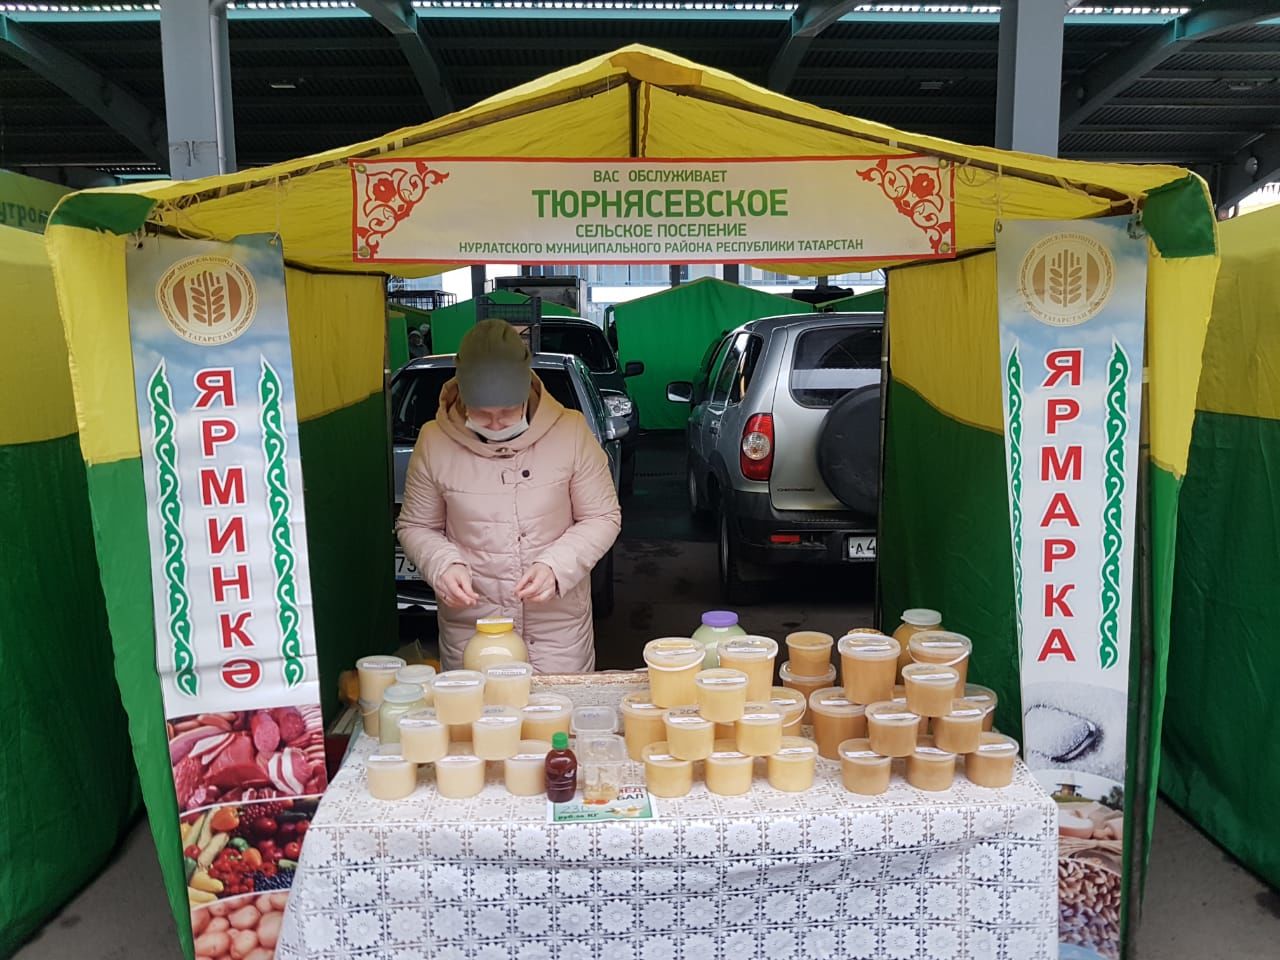 Нурлатцы предлагают широкий ассортимент продукции в сельхозярмарке в Казани